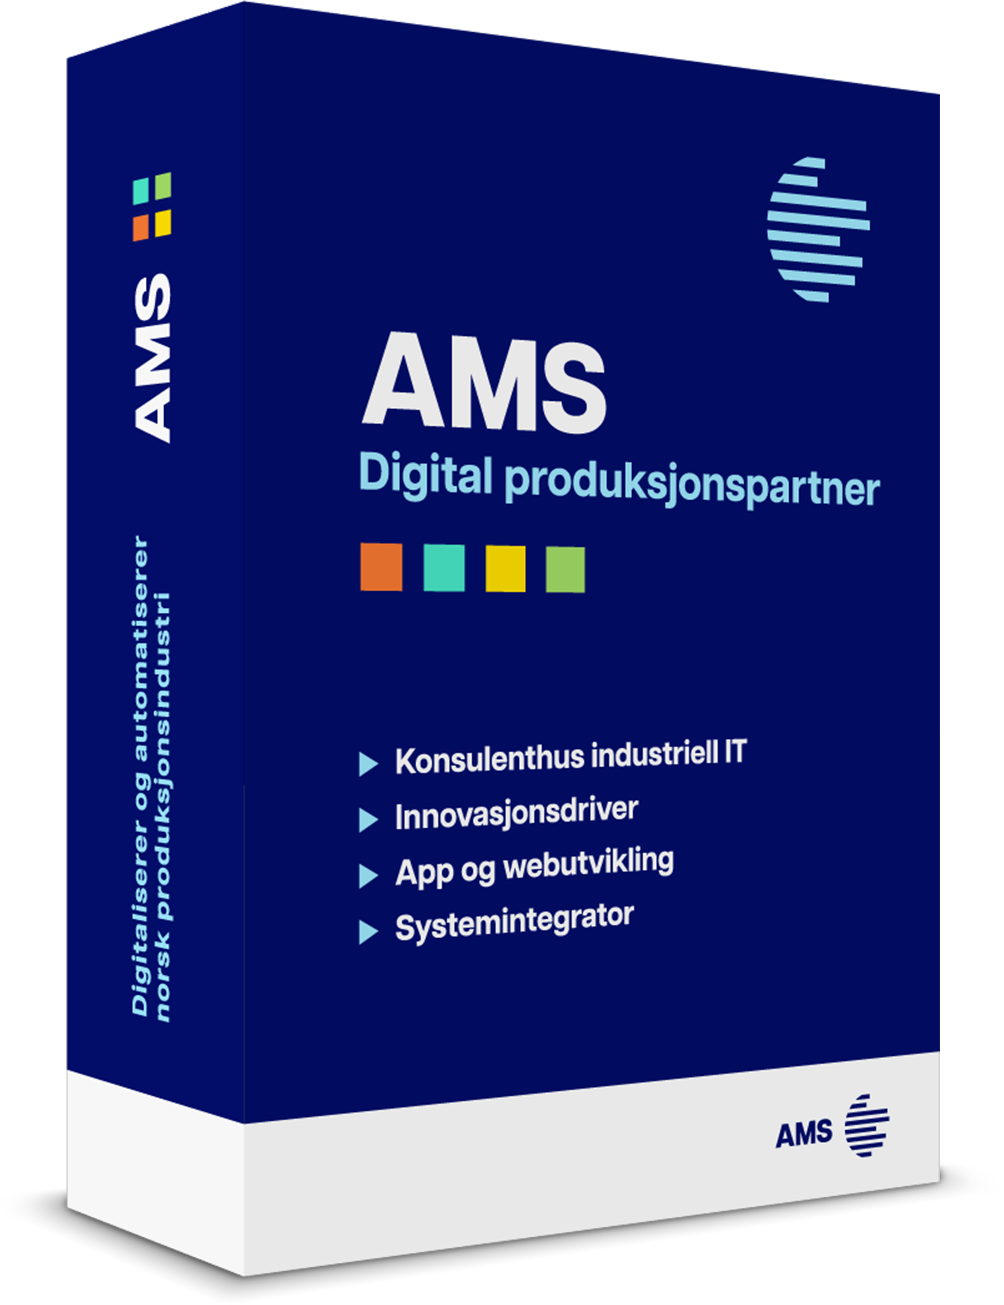 AMS er din Rådgivende Digitaliseringspartner og innovasjonsdriver